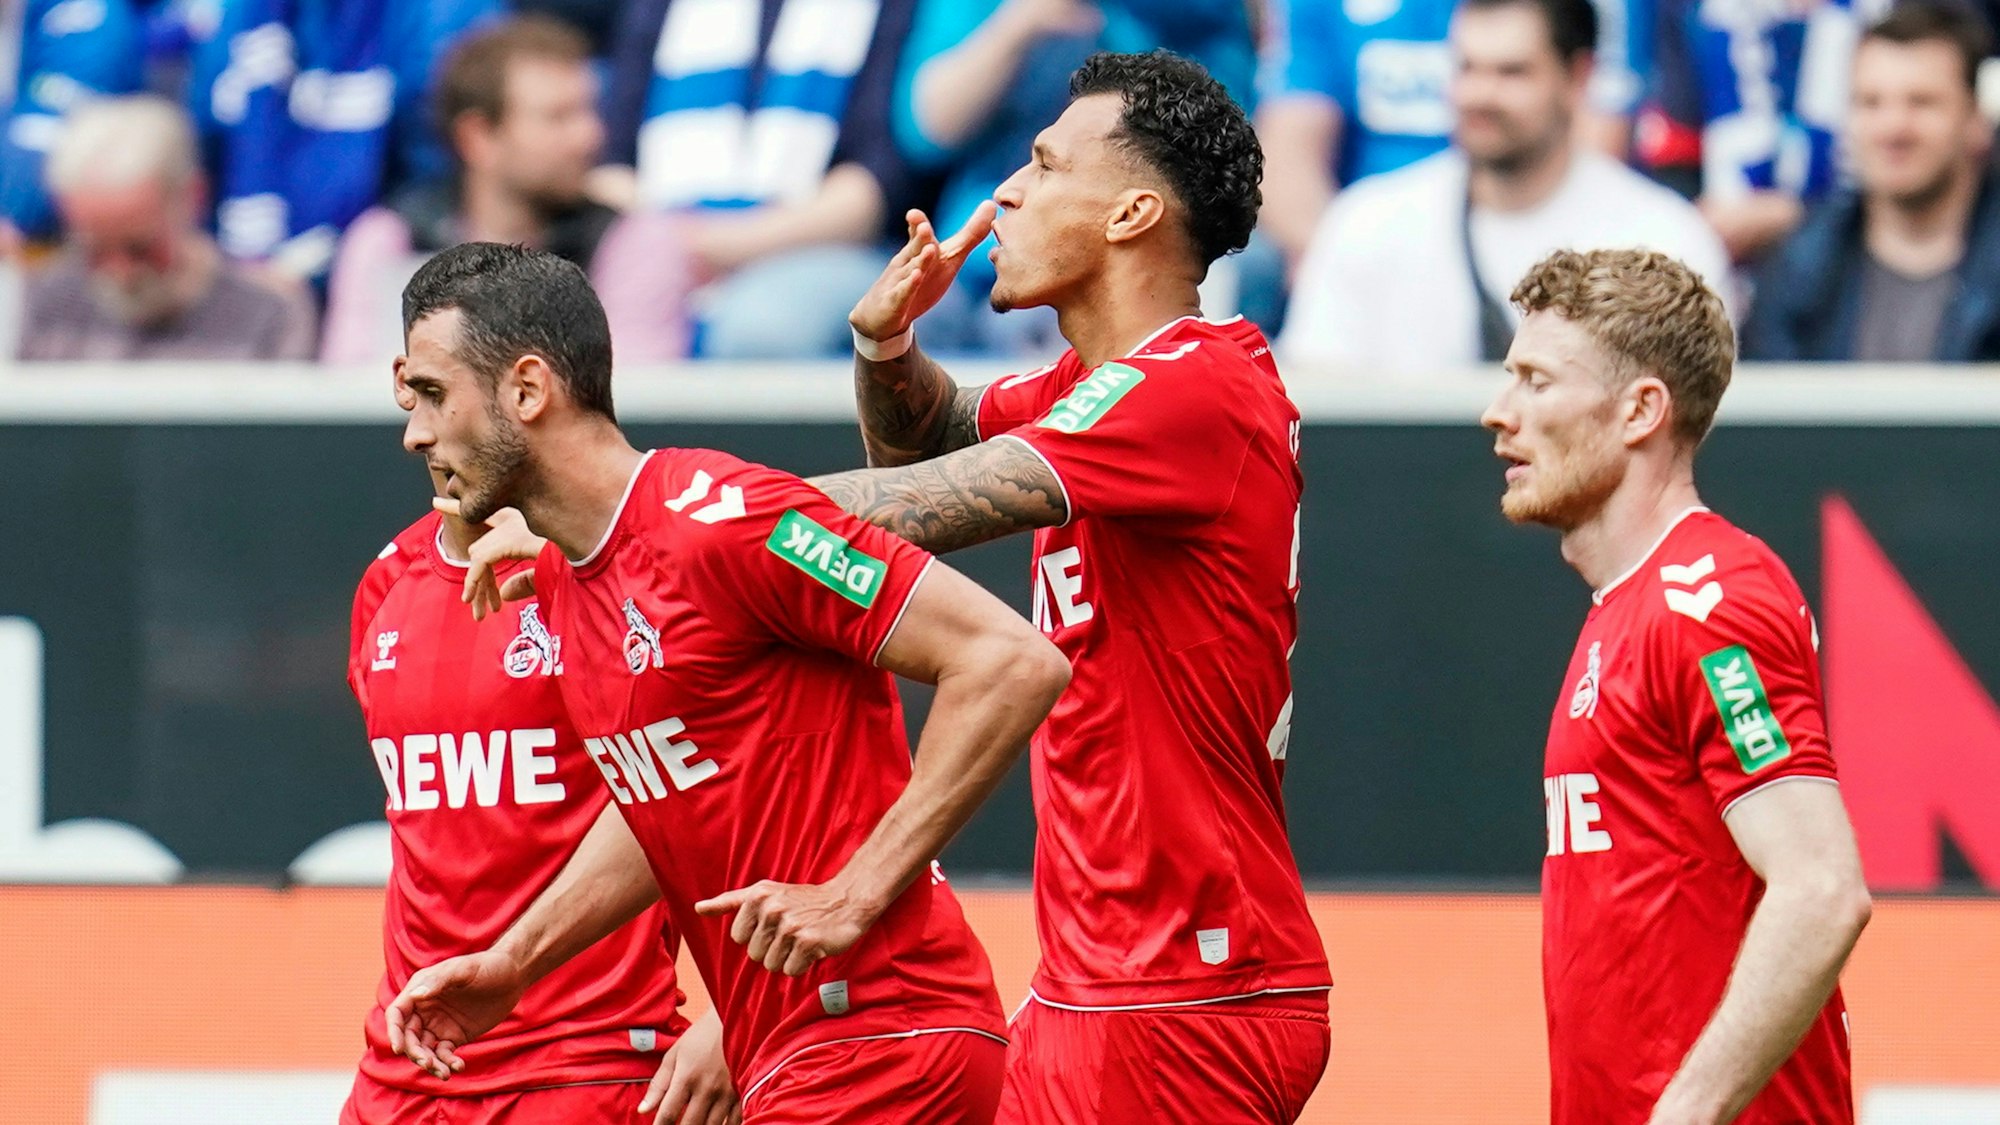 Davie Selke jubelt nach seinem Tor für den 1. FC Köln gegen die TSG Hoffenheim.